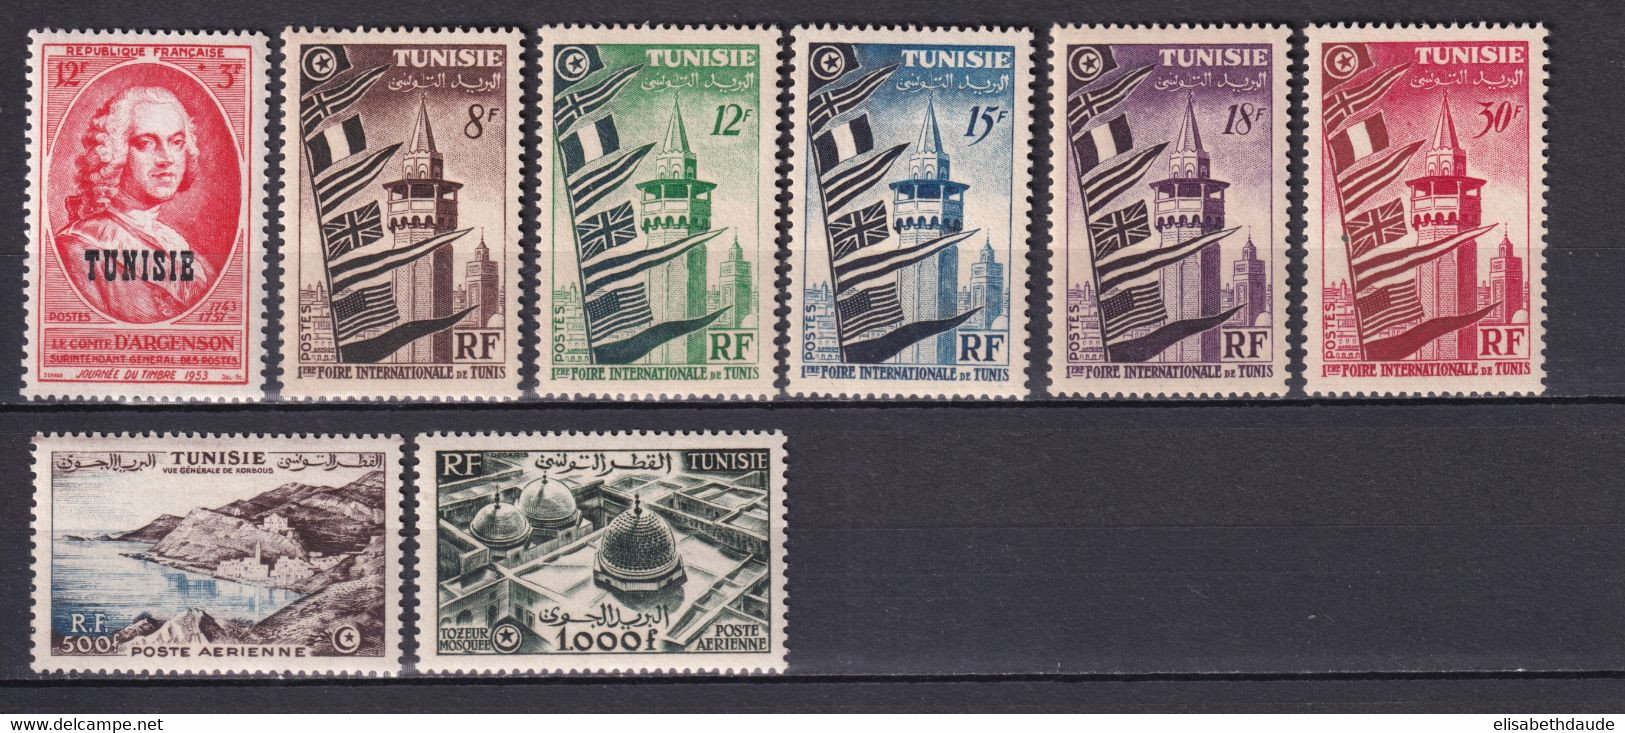 TUNISIE - 1953 - ANNEE COMPLETE AVEC POSTE AERIENNE - YVERT N° 359/364 +A18/19 * MLH - COTE = 111 EUR. - Ungebraucht